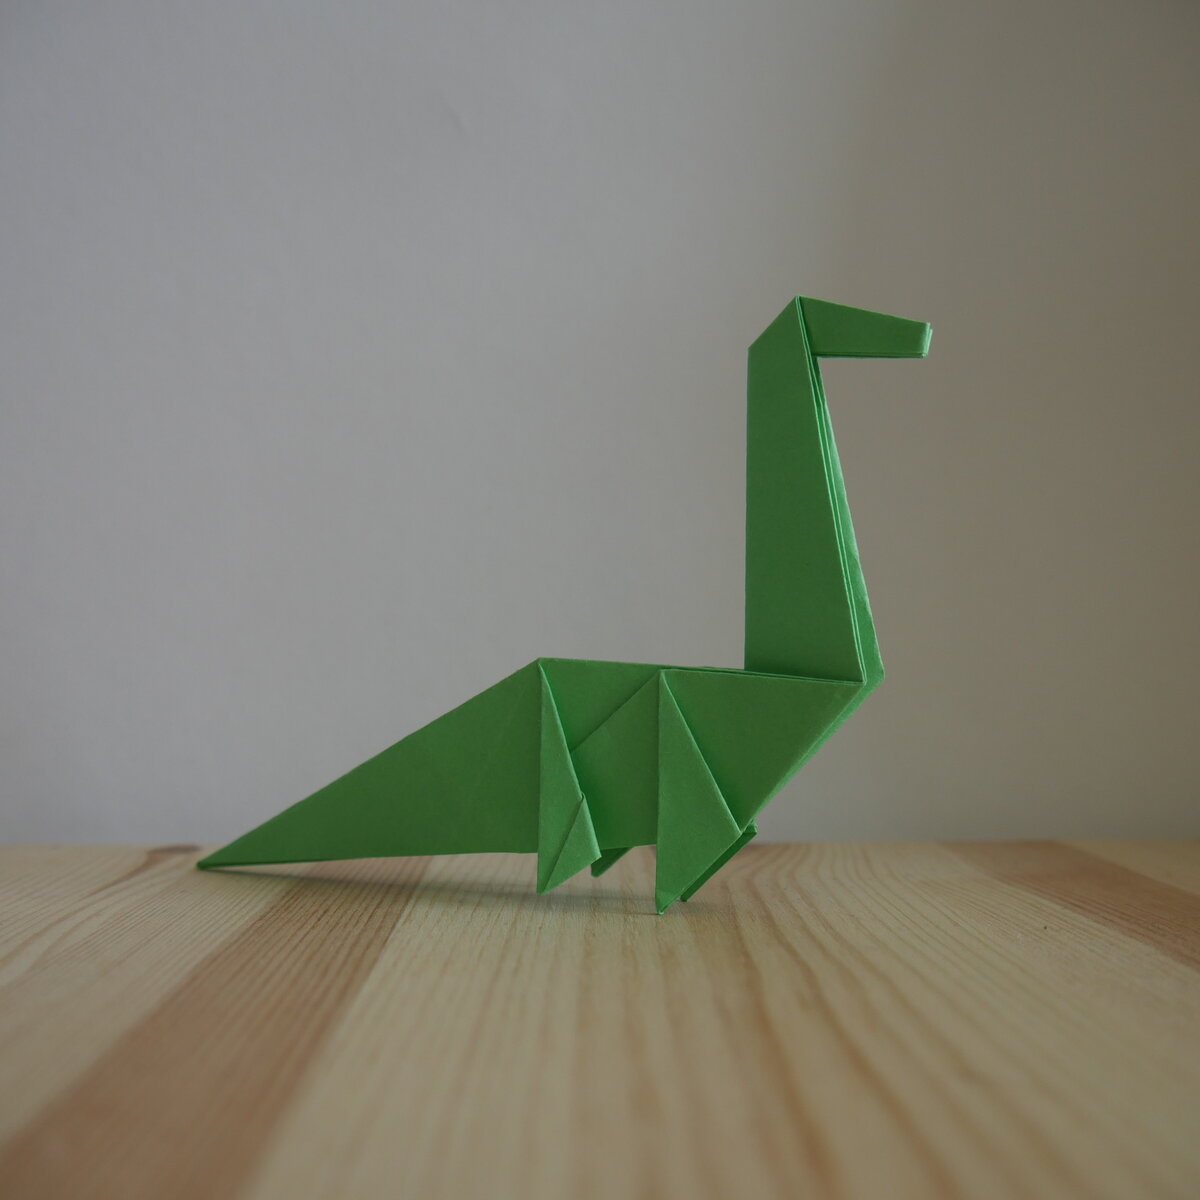 Динозавр Поделки на праздники Динозаврик из пластилина и шишки